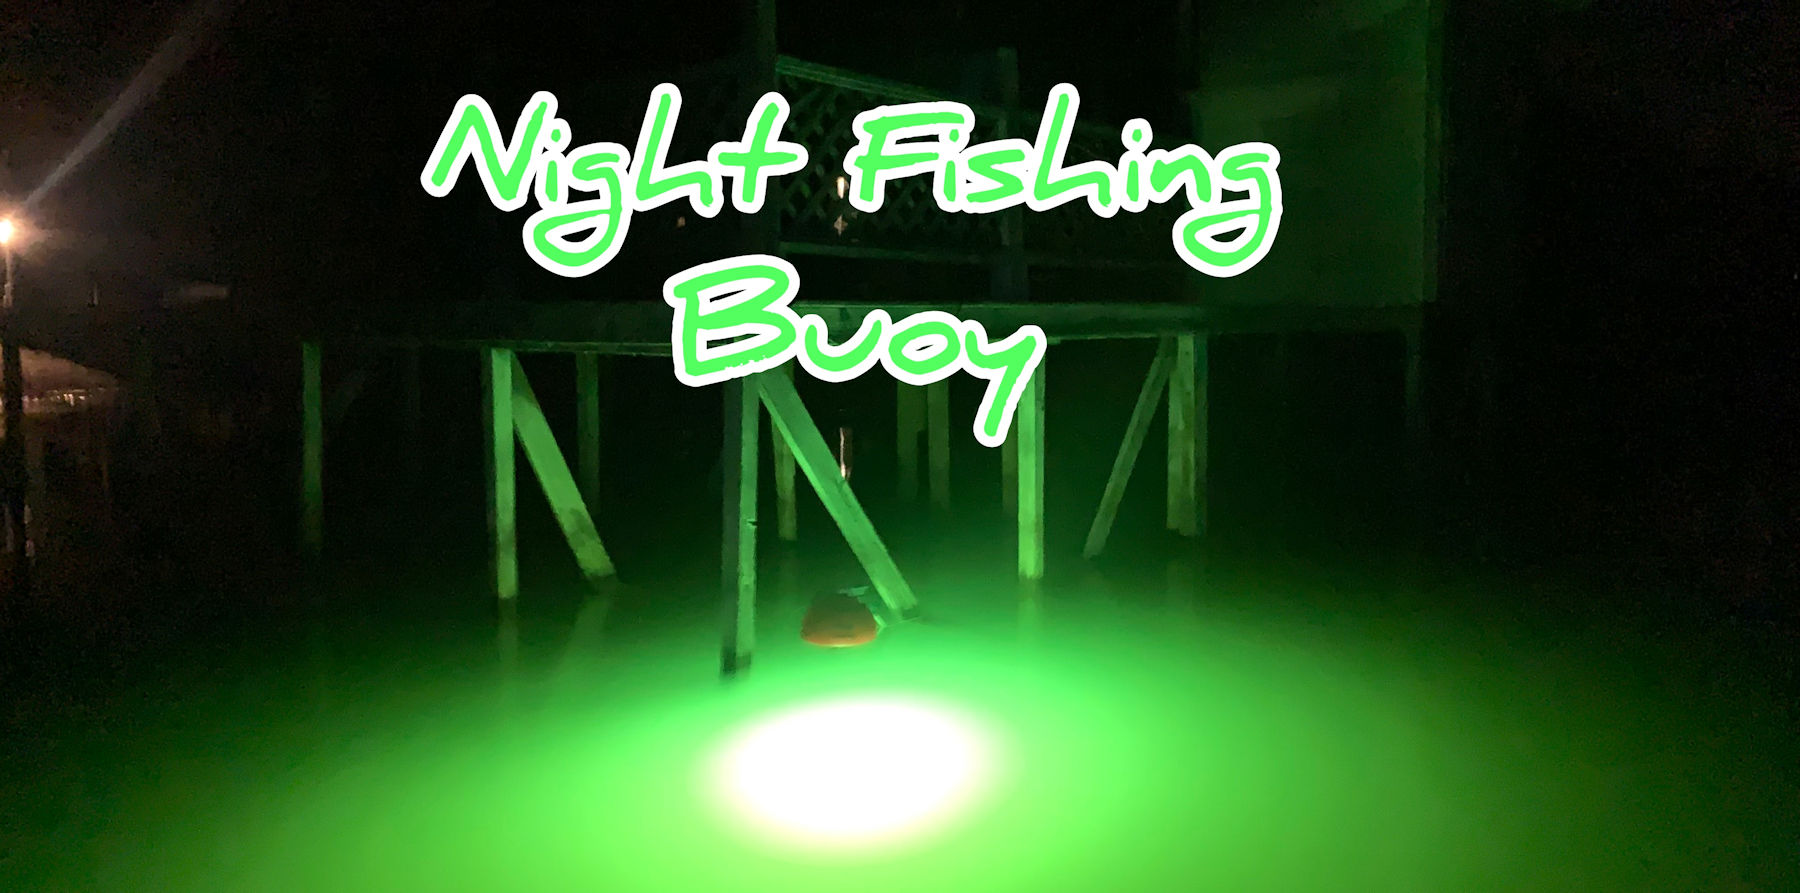 https://www.nightfishingbuoy.com/templates/rt_studius/custom/images/NightFishingBuoy-Logo.jpg